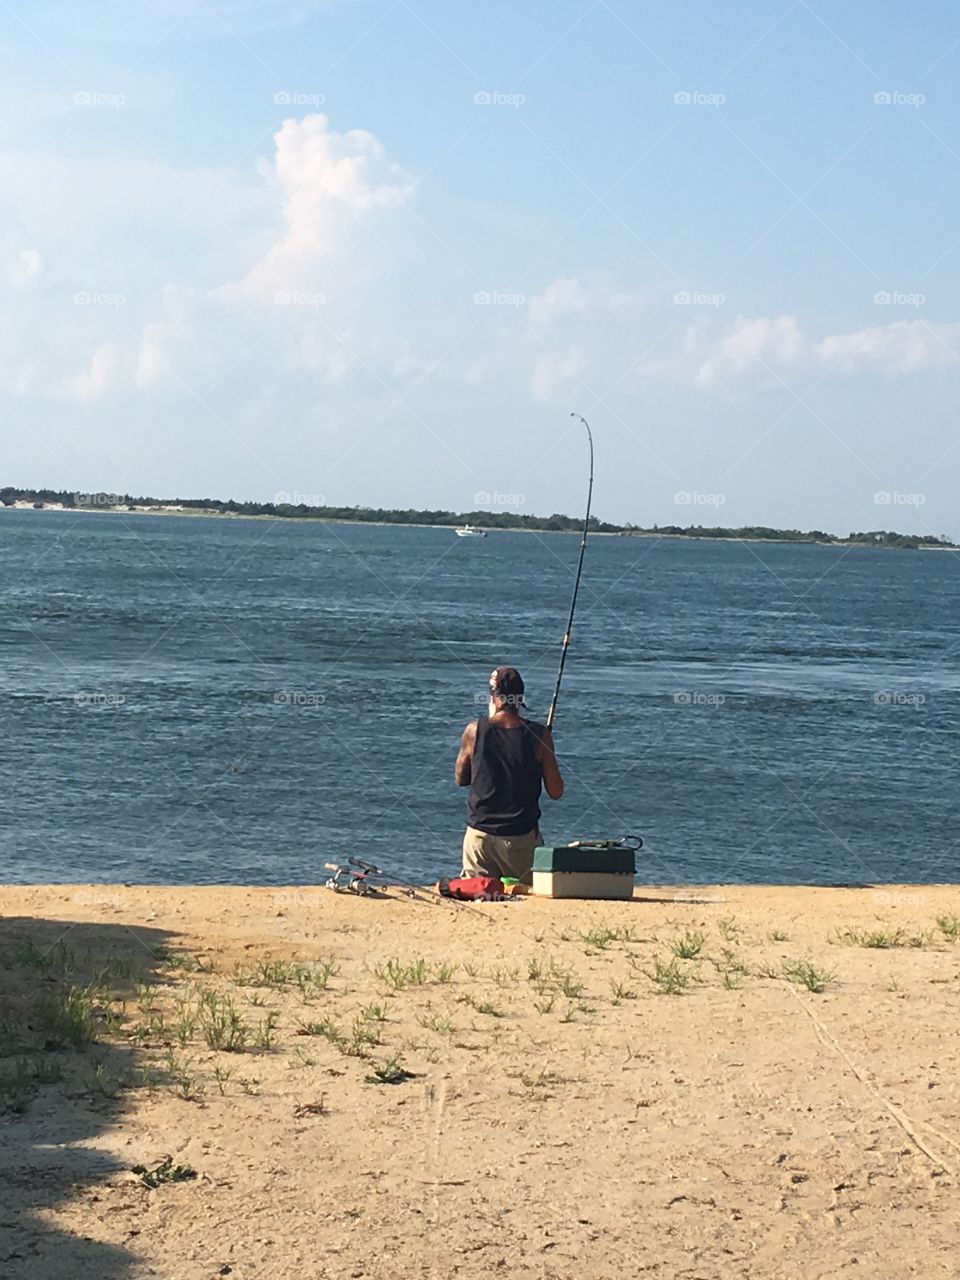 Local fisherman fluking 